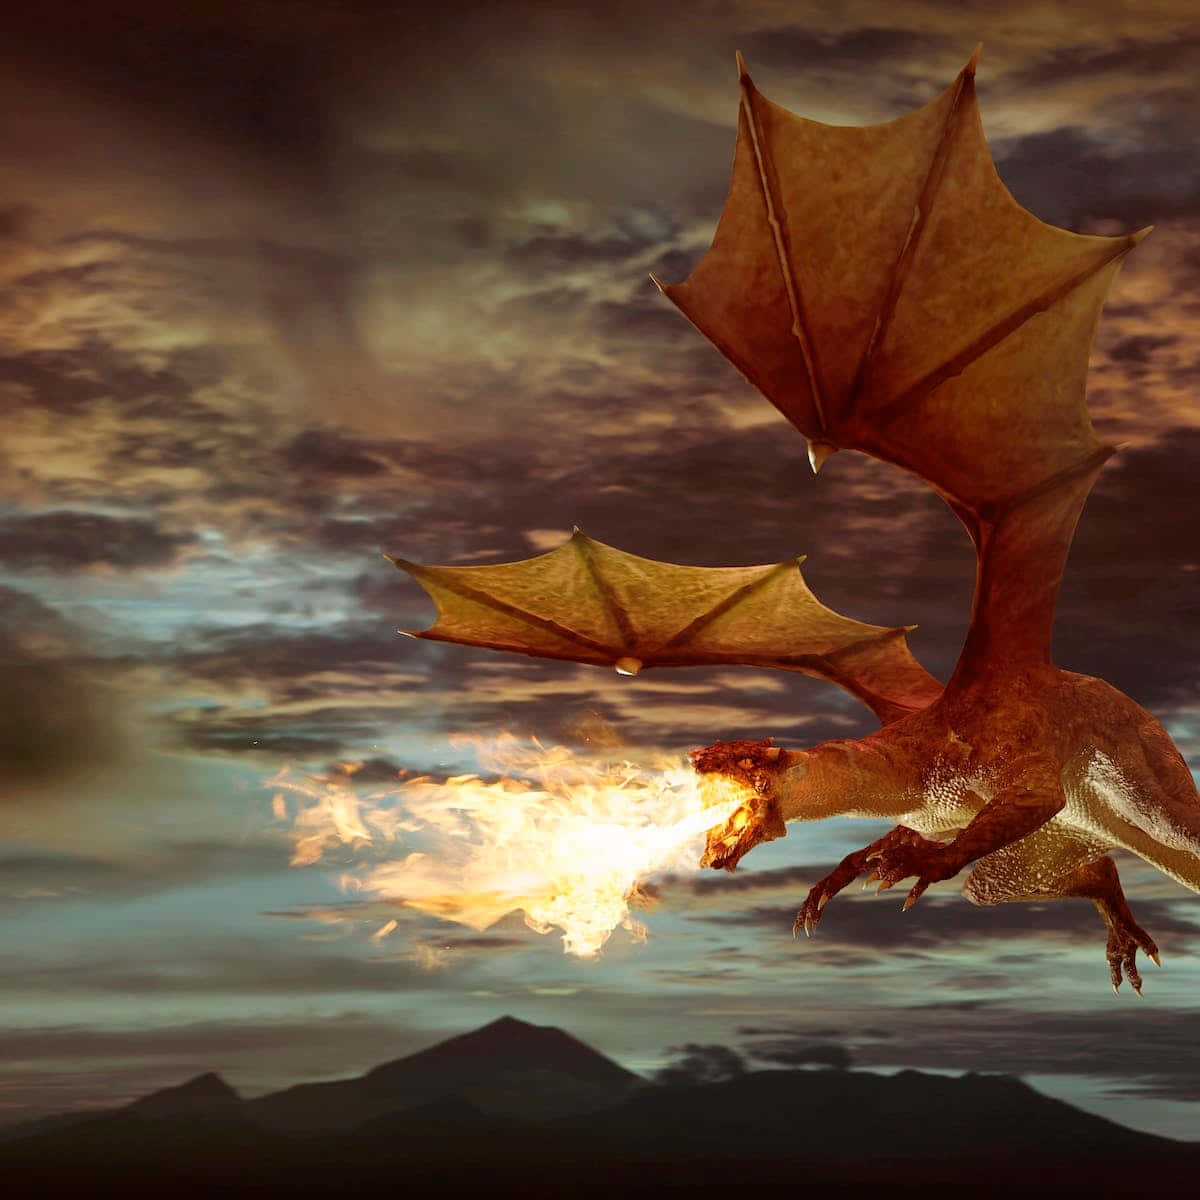 A fierce dragon ready to take flight